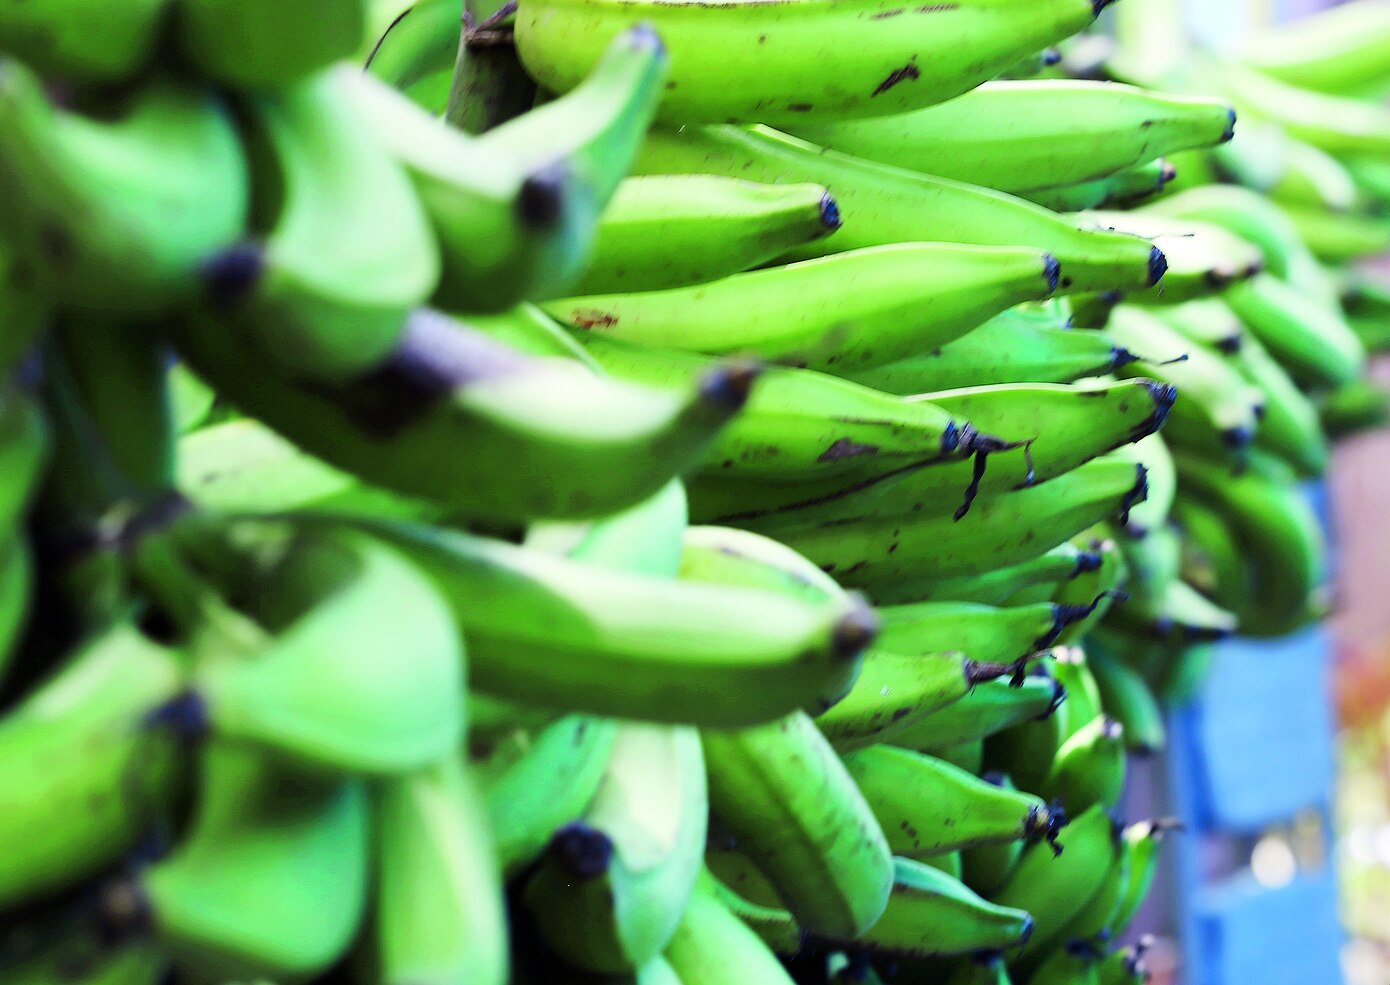 Primera Hora: Surgen nuevos productos para rescatar los plátanos afectados por la tormenta Isaías